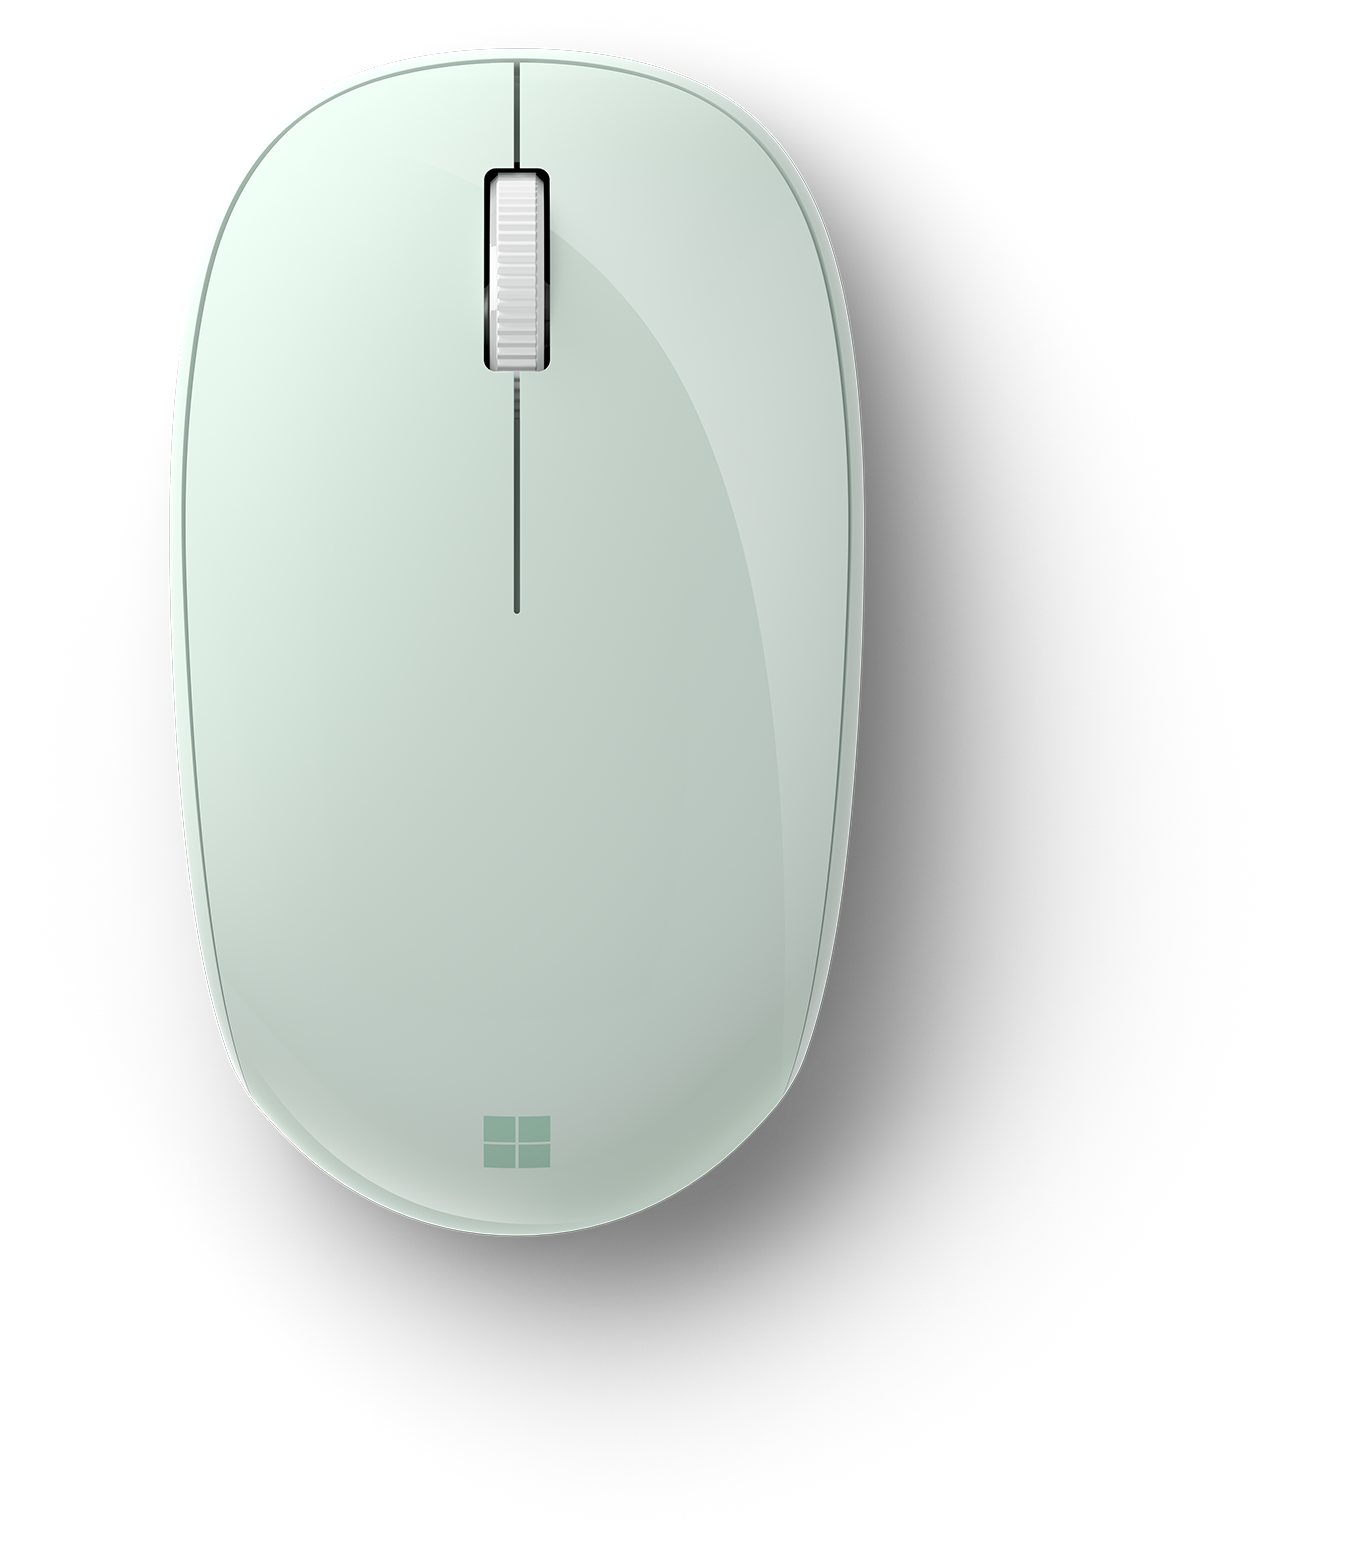 Les Bonnes Affaires - Cette souris Bluetooth avec un design mince et  ergonomique est parfaitement adapté à la main. Sa surface lisse et givrée  la rend encore plus belle. La mini souris